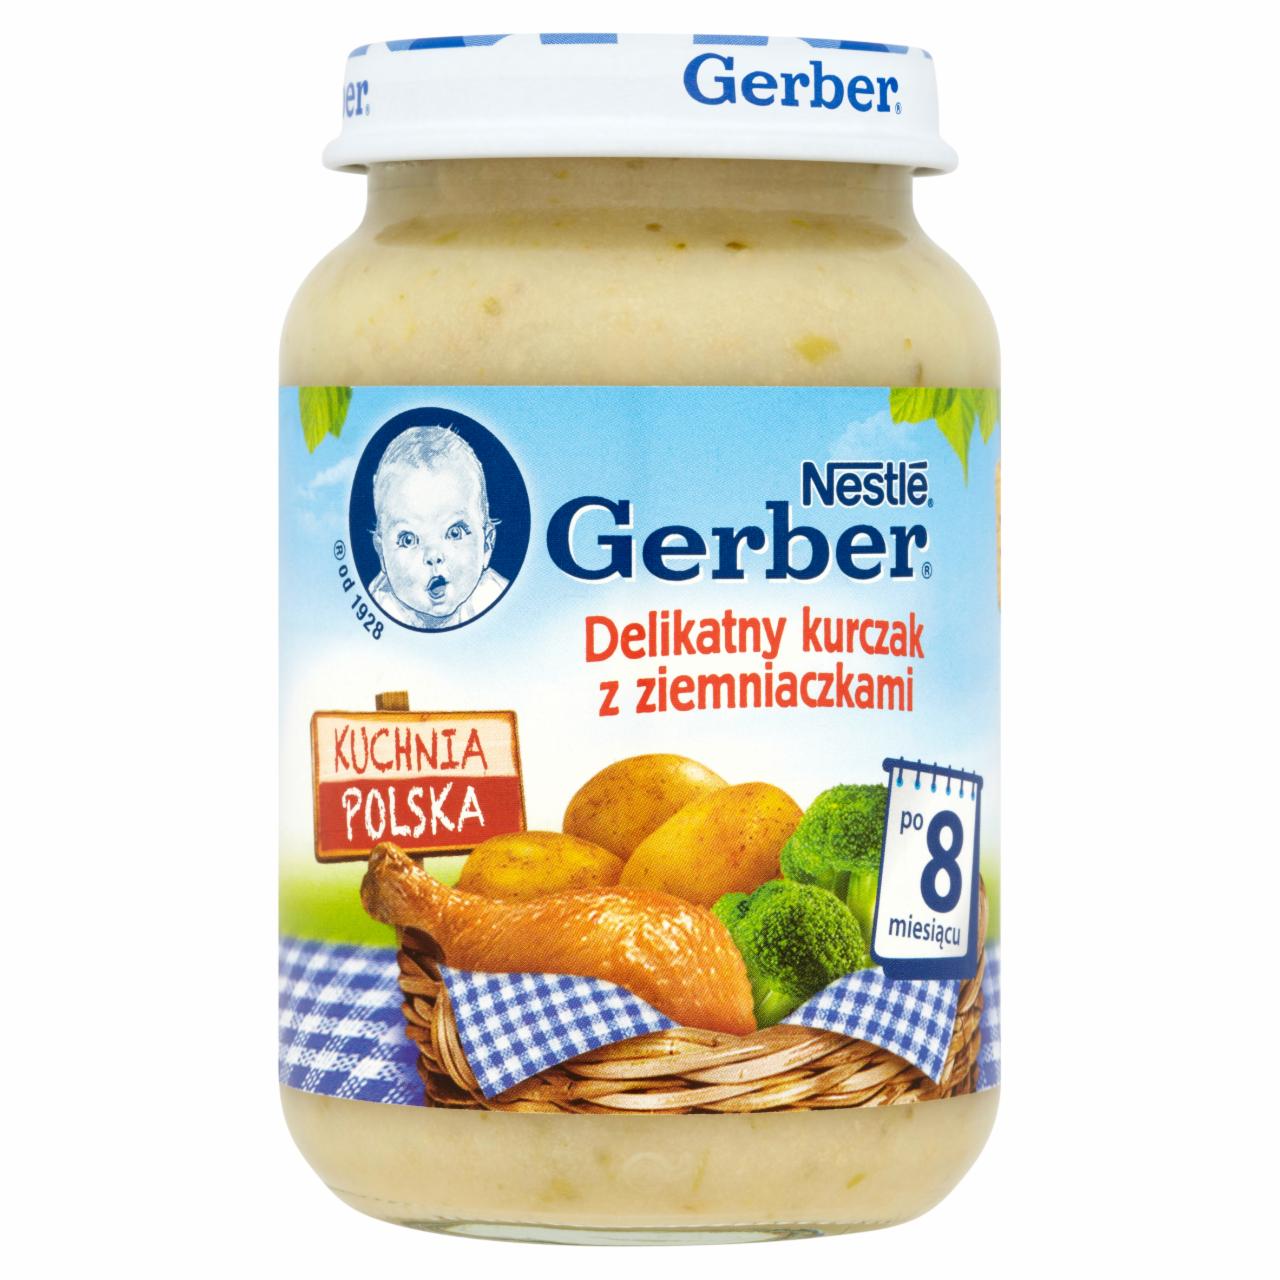 Zdjęcia - Gerber Kuchnia Polska Delikatny kurczak z ziemniaczkami po 8 miesiącu 190 g